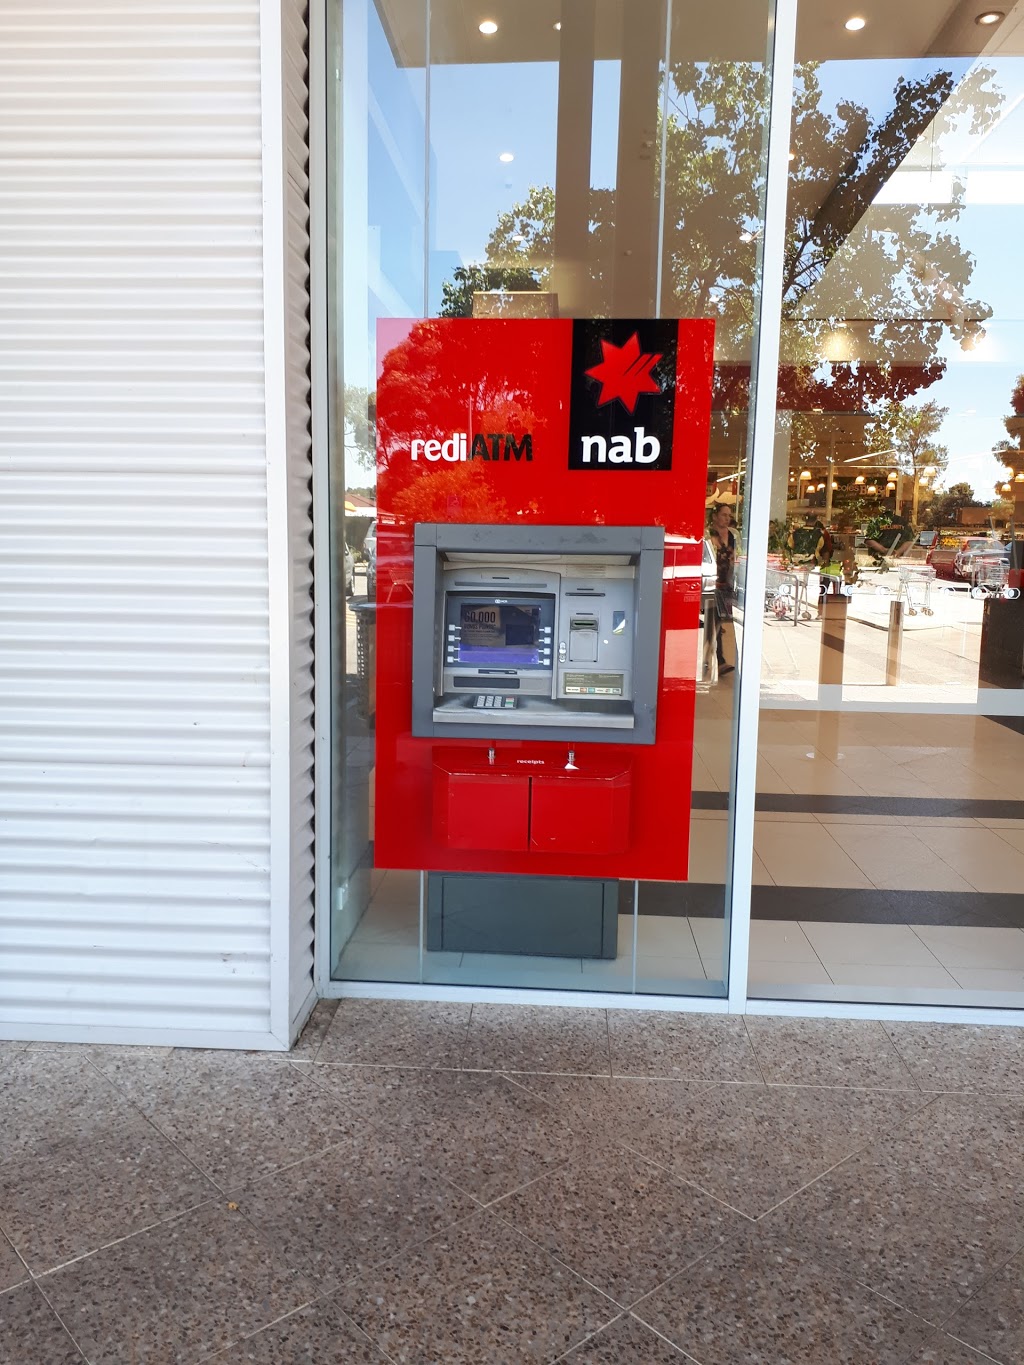 NAB ATM | 700 Armadale Rd, Haynes WA 6112, Australia | Phone: 13 22 65